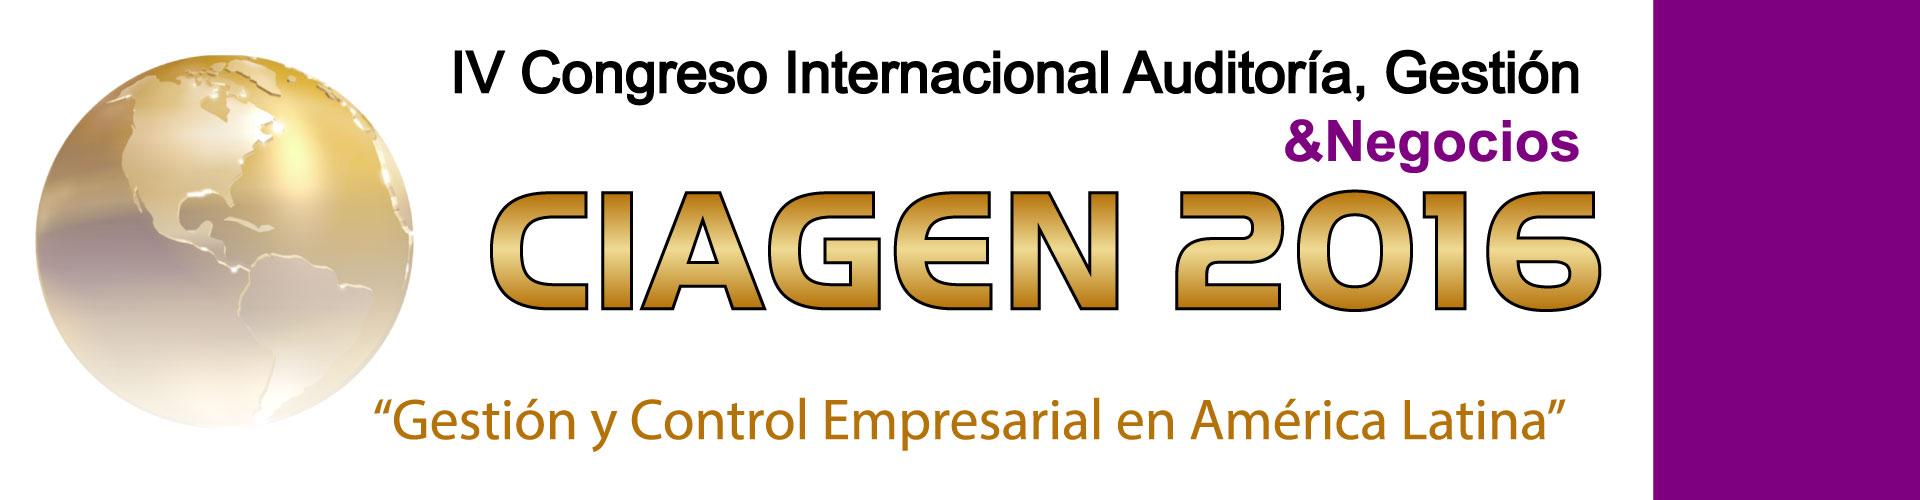 Portada Congreso Internacional Auditoría, Gestión y Negocios  CIAGEN 2016